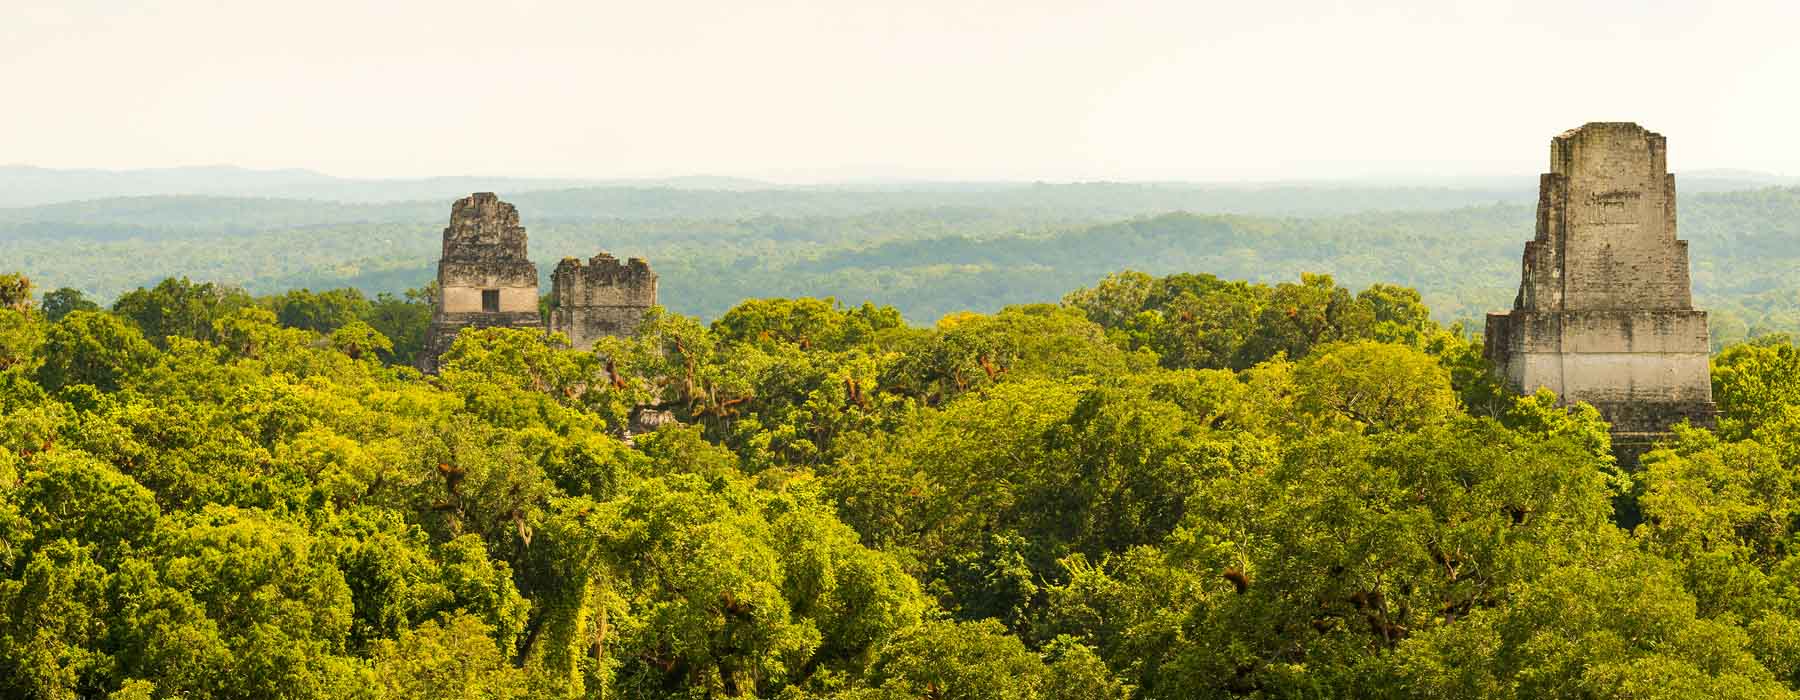 Tikal National Park<br class="hidden-md hidden-lg" /> Holidays